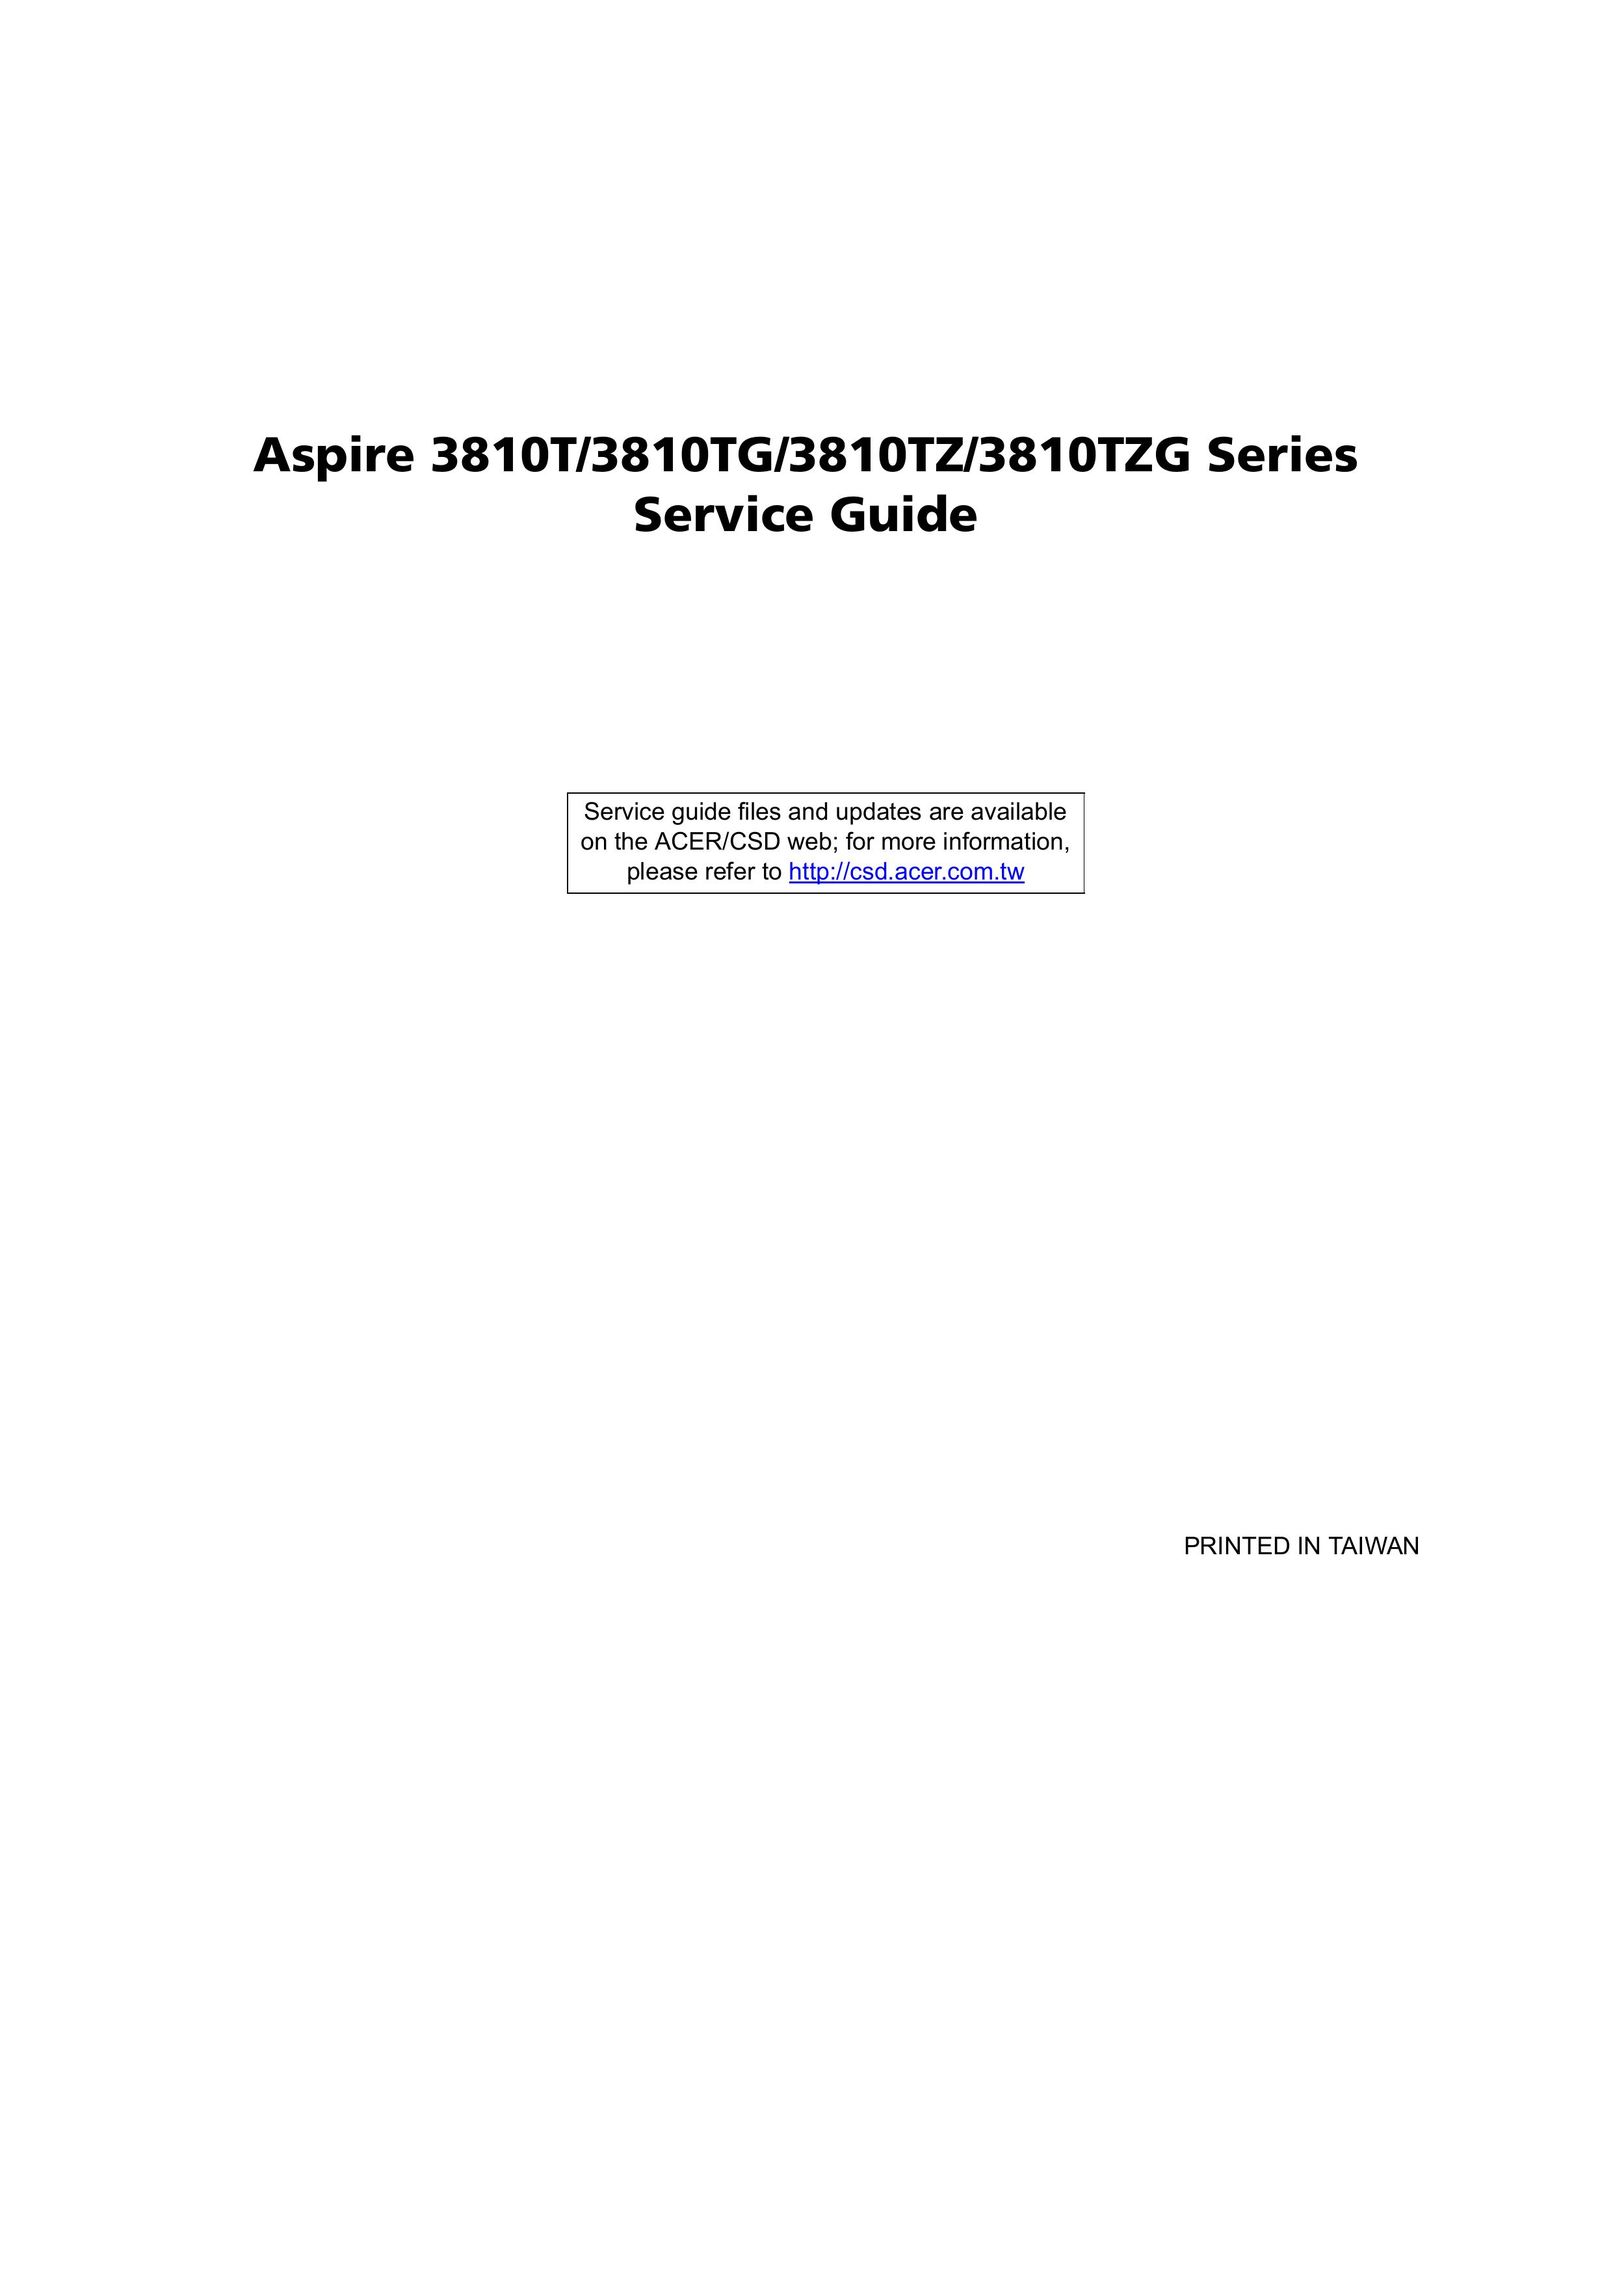 Aspire Digital 3810TZ Personal Computer User Manual